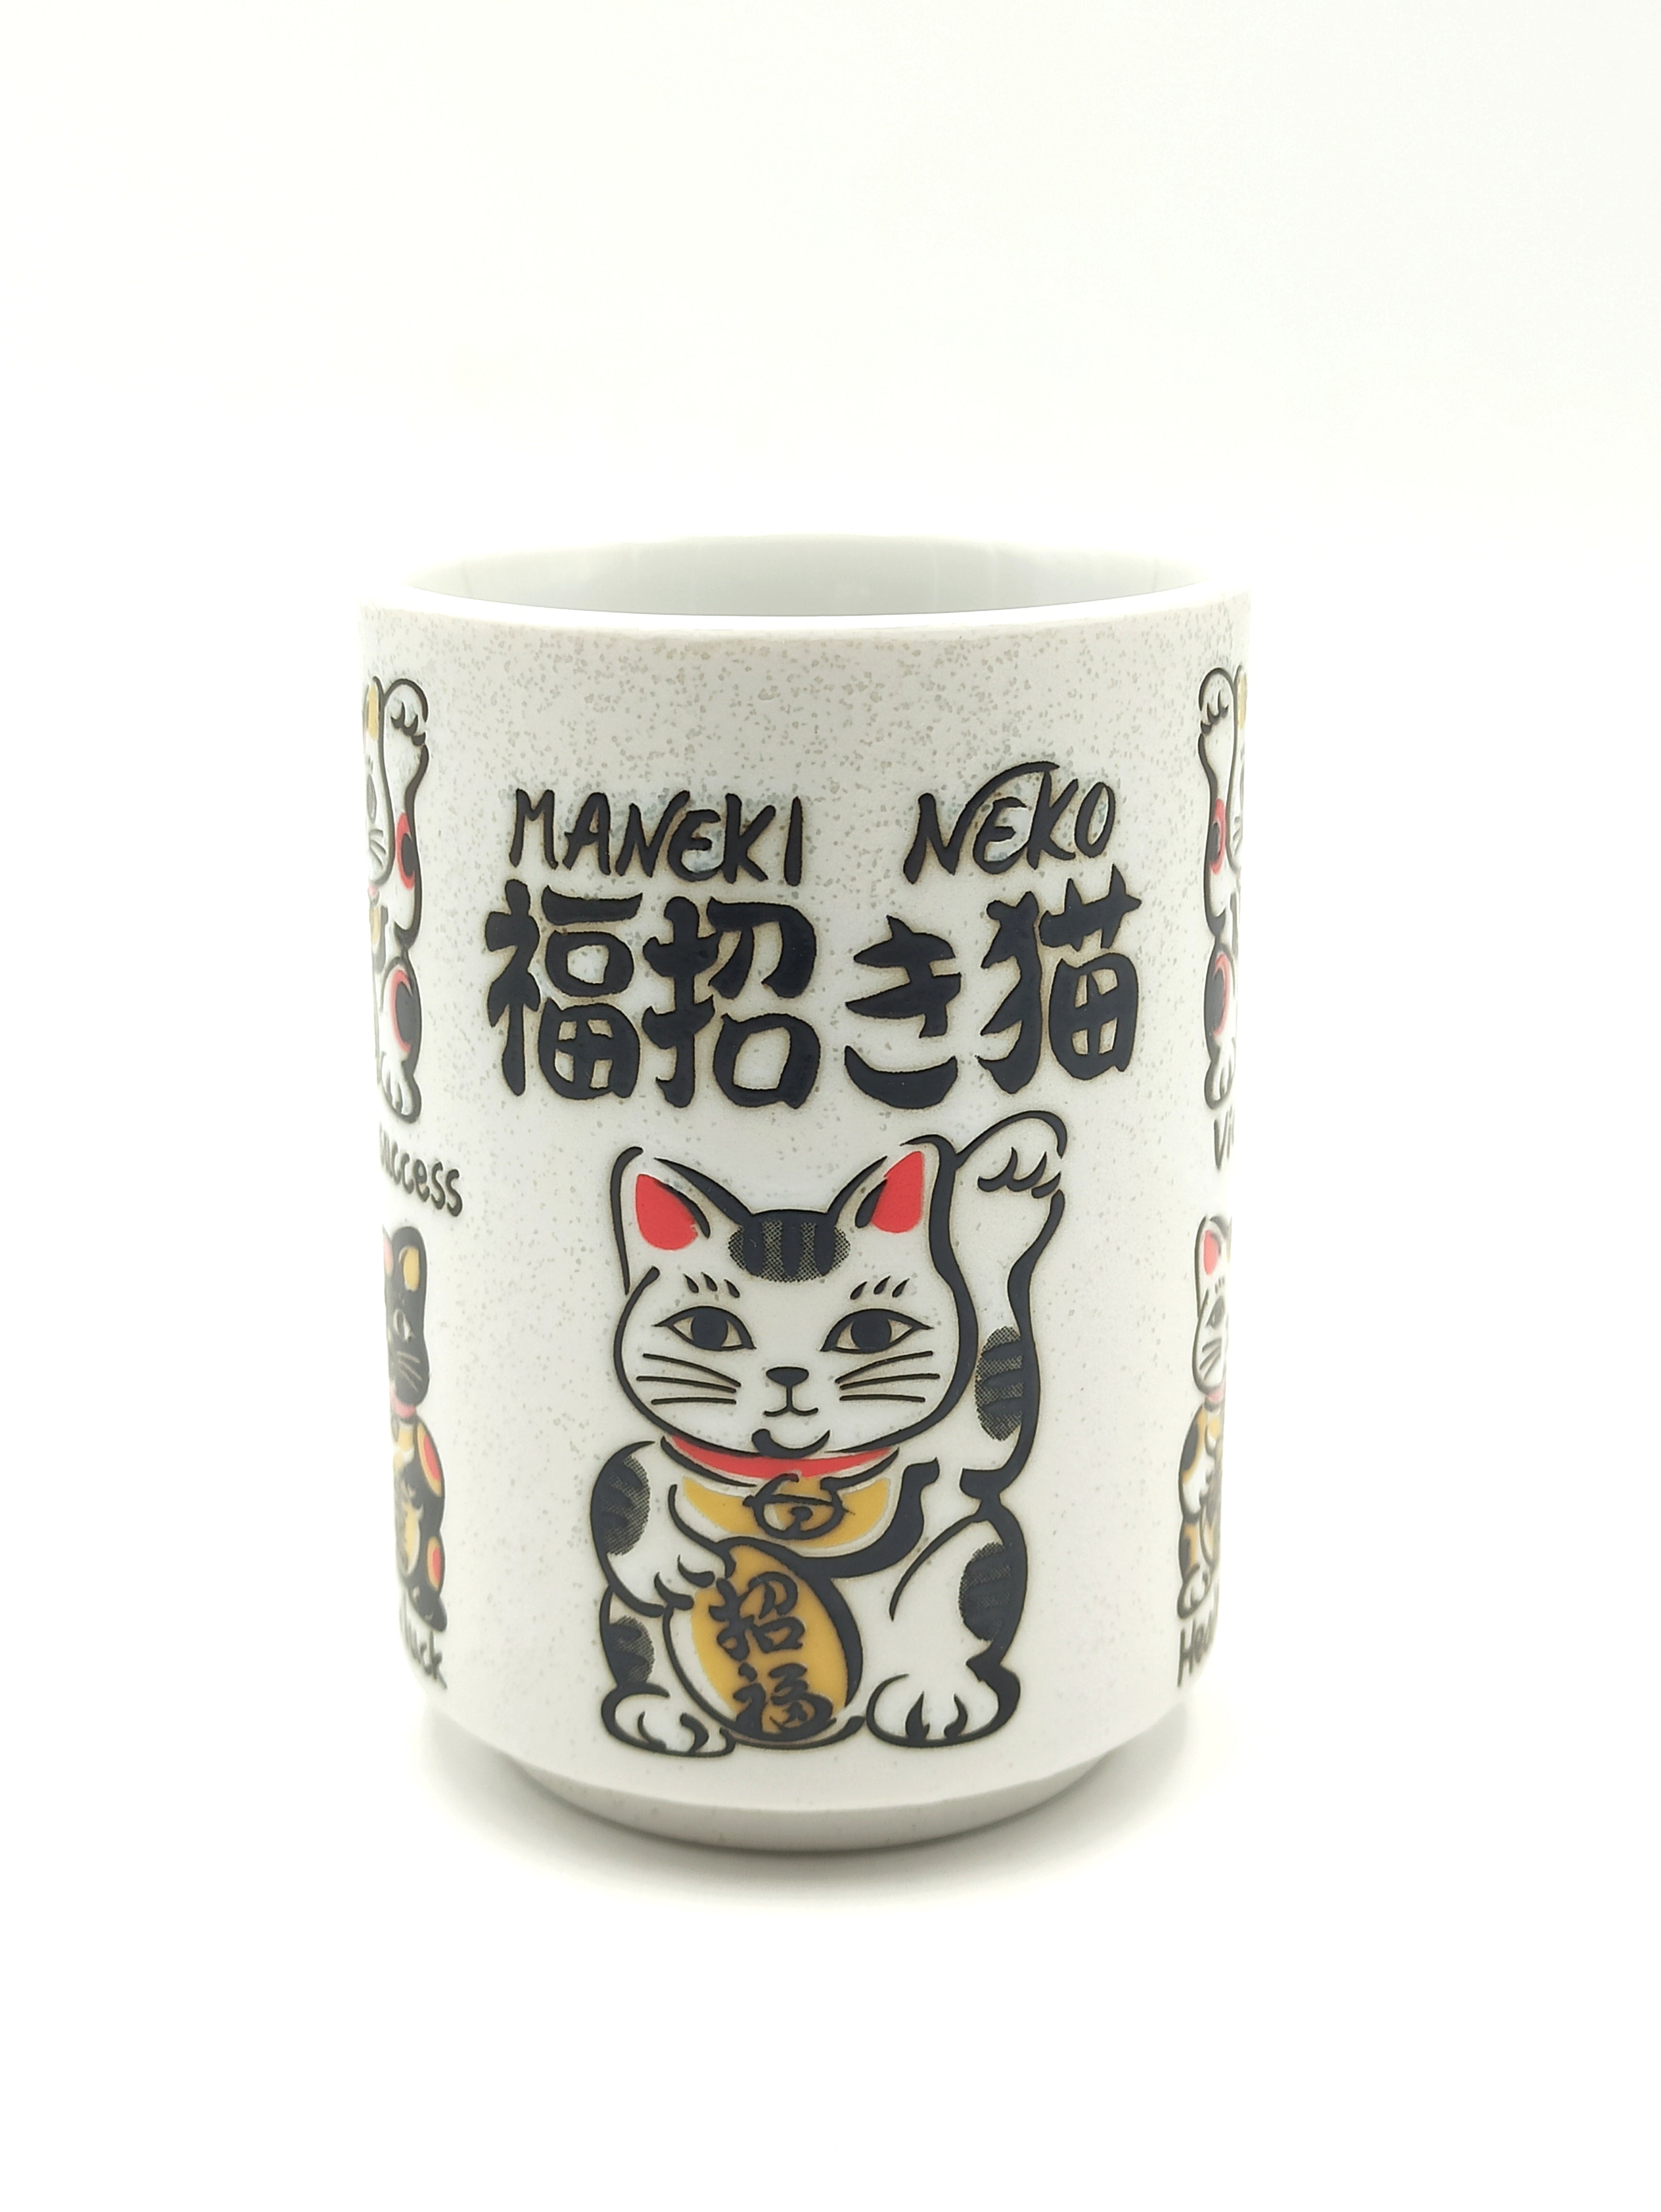 Tazza in porcellana con illustrazione Maneki Neko Gatto Fortunato